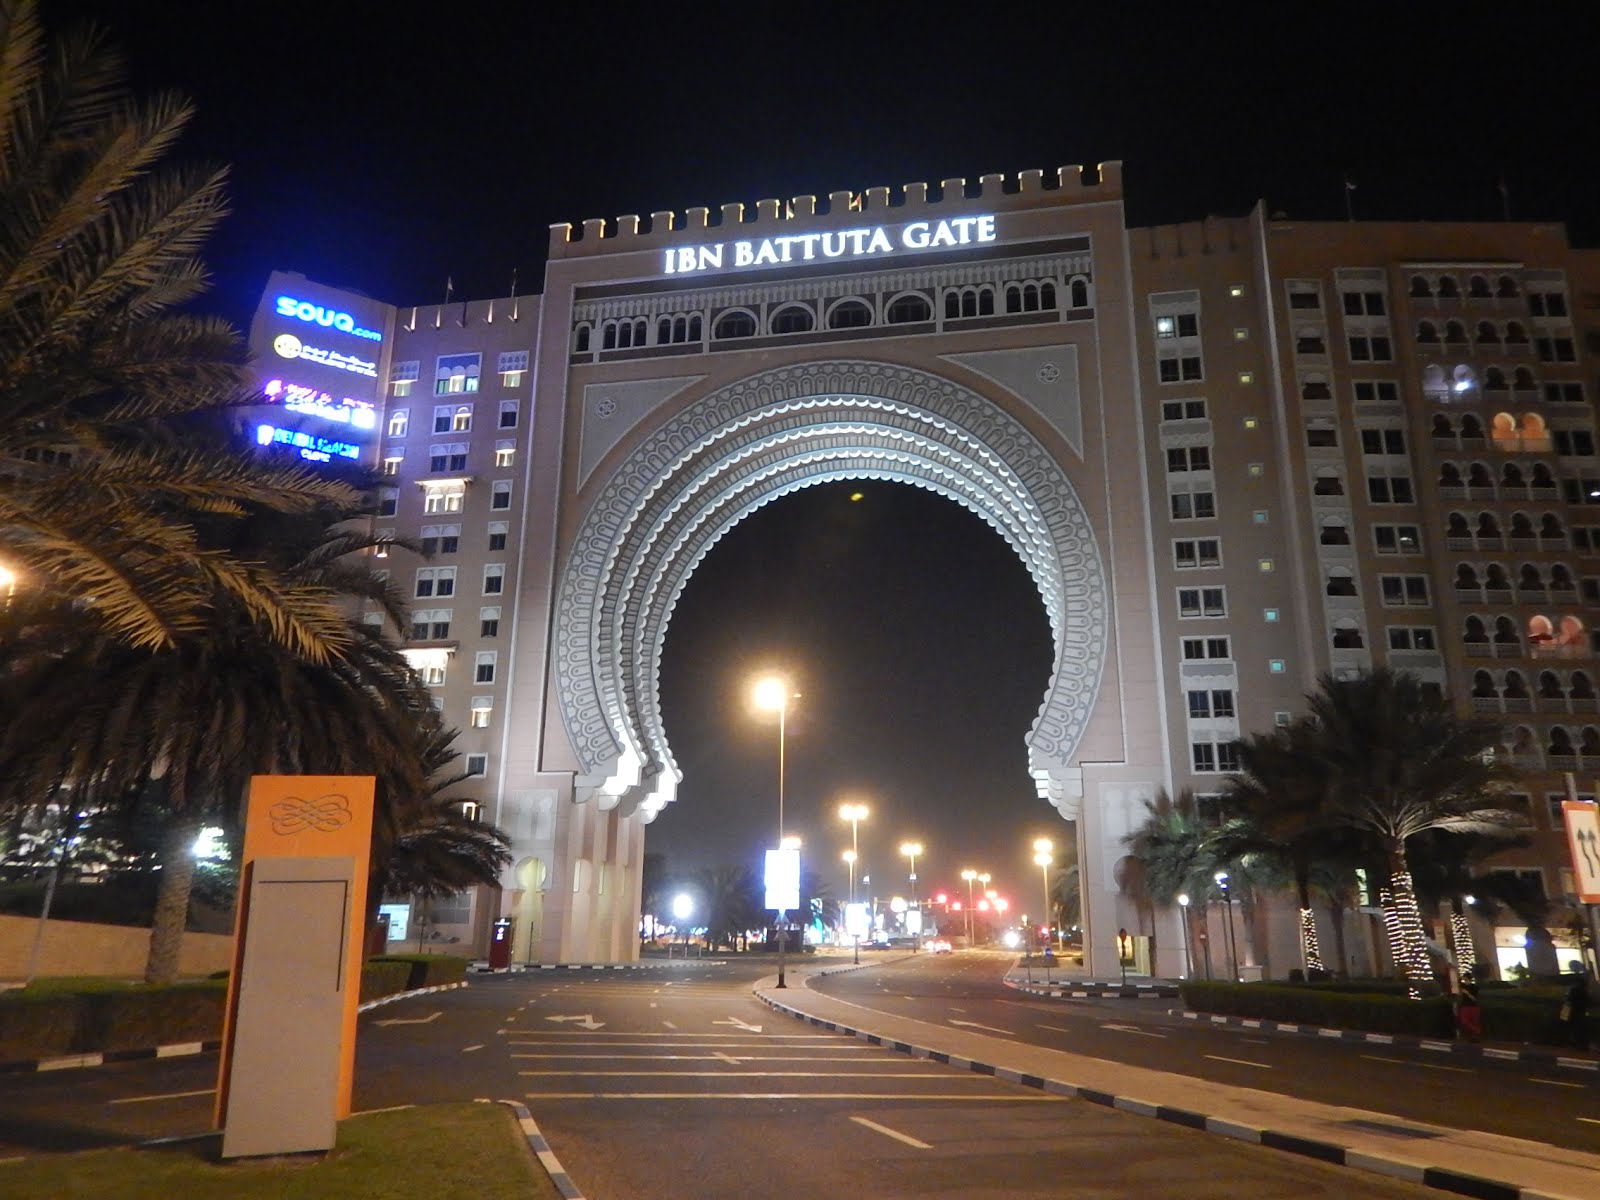 Ibn Batuta Gate